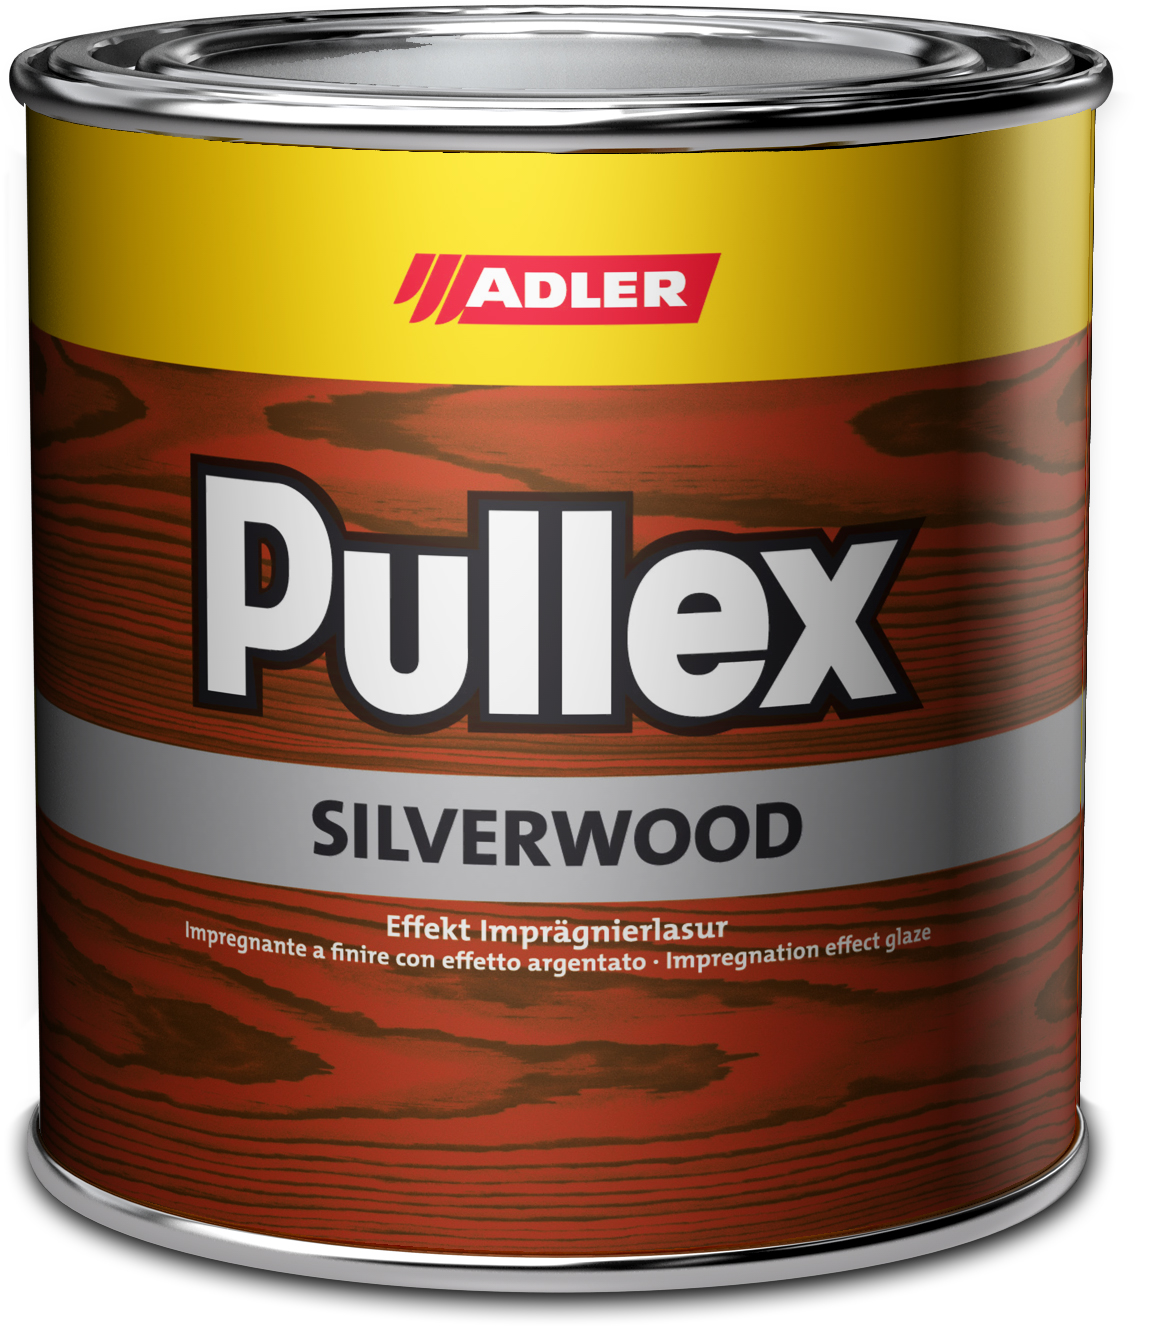 Adler Pullex Silverwood - efektná lazúra do exteriéru vytvárajúca vzhľad starého dreva 20 l altgrau - starošedá